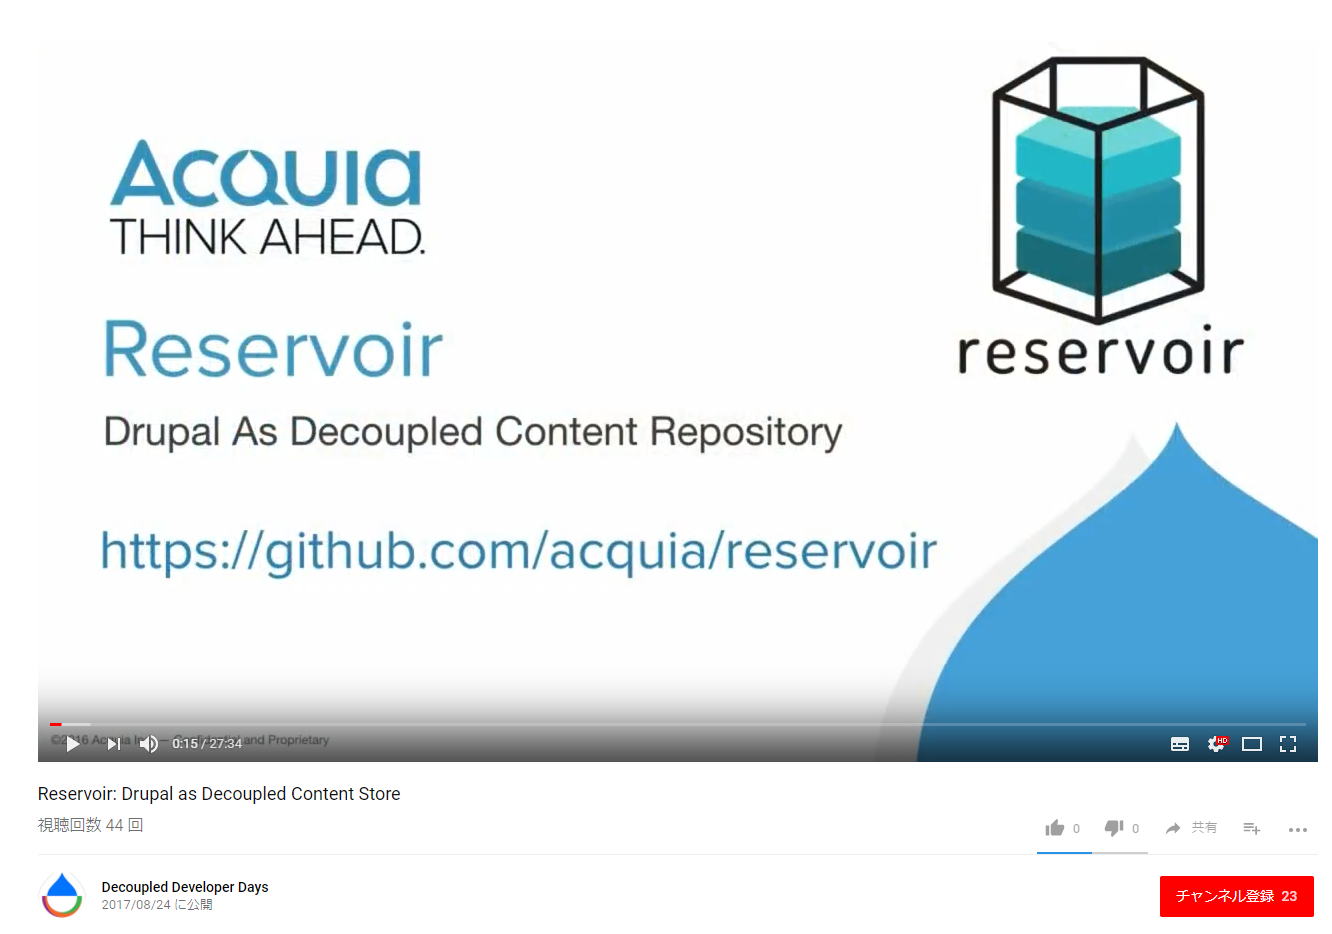 Reservoir: Drupal as Decoupled Content Store